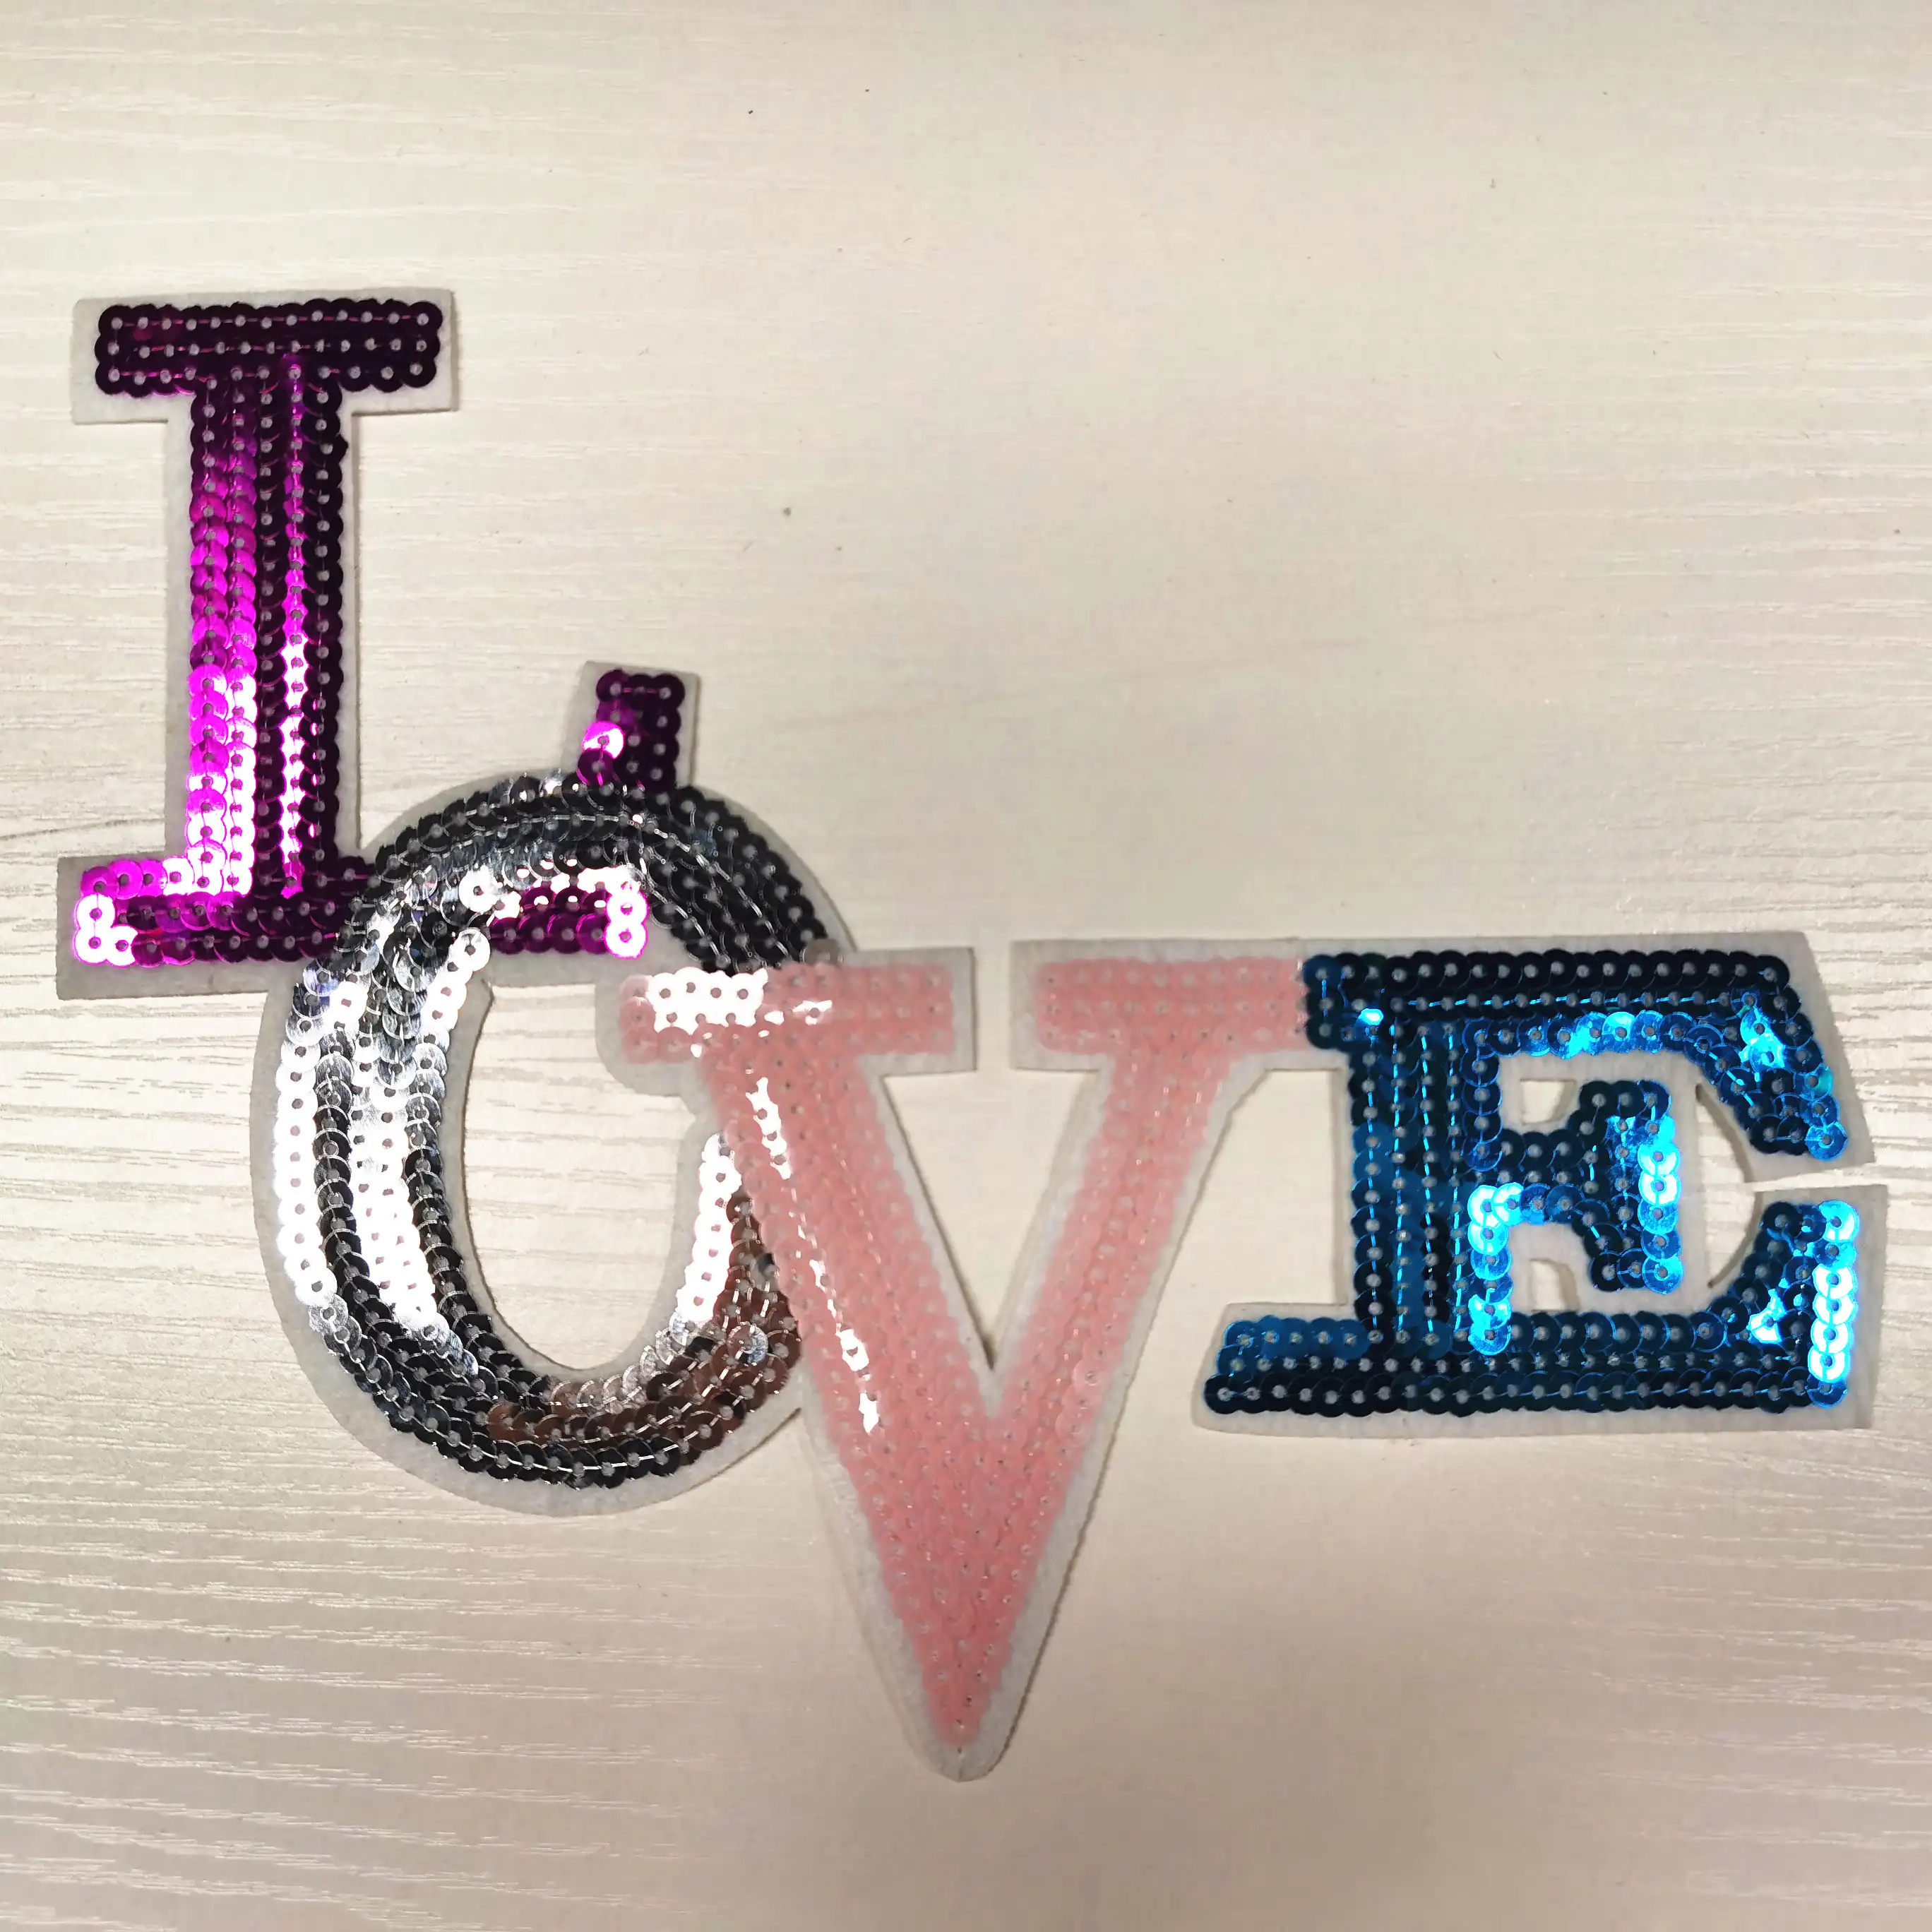 Цветные нашивки с надписью «LOVE» и блестками, аппликация для вышивки утюгом на одежде или сумке, товары для шитья, декоративные нашивки